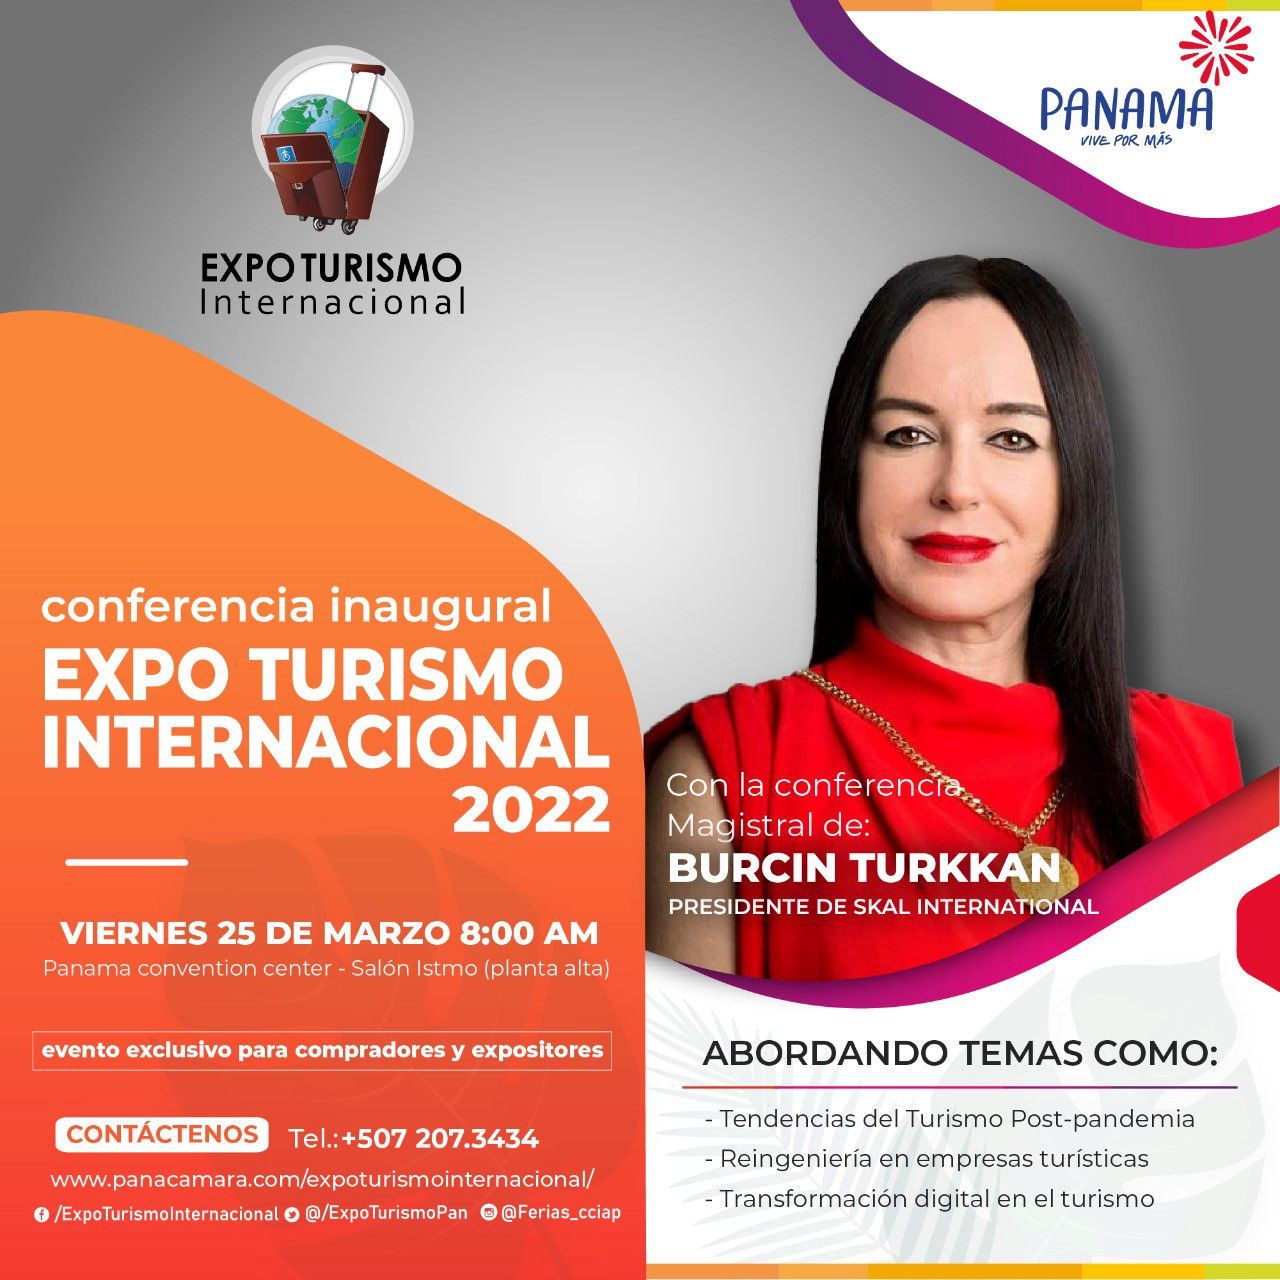 Burcin Turkkan, presidenta de Skål International, realizará la conferencia inaugural de Expo Turismo Internacional (Panamá)